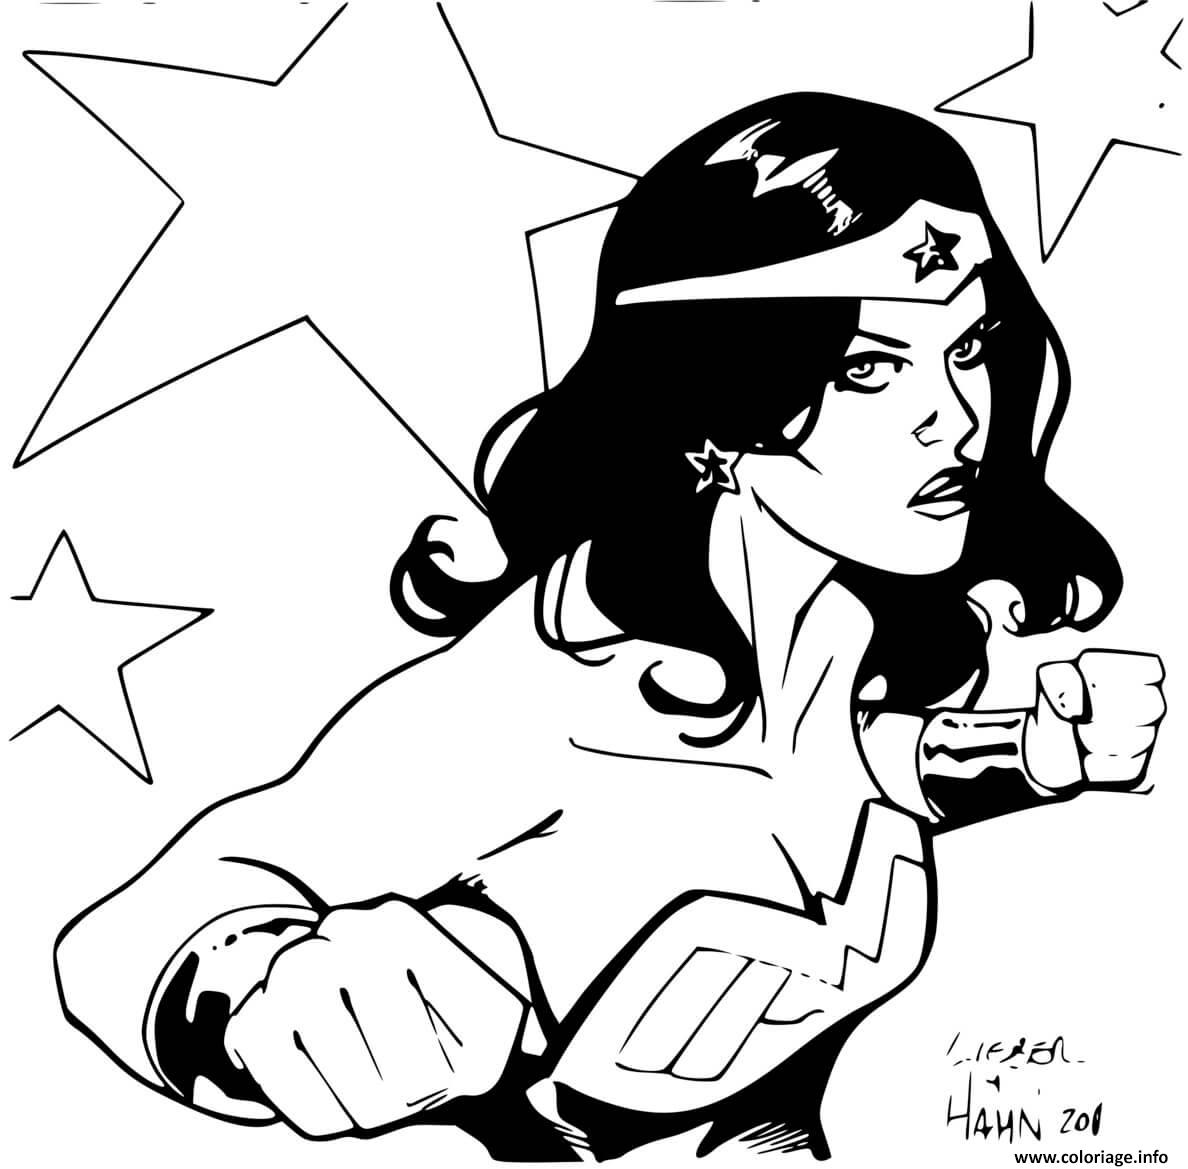 Coloriage Super Heroine Wonder Woman Par David Hahn And Steve Liber Dc Comics Dessin à Imprimer